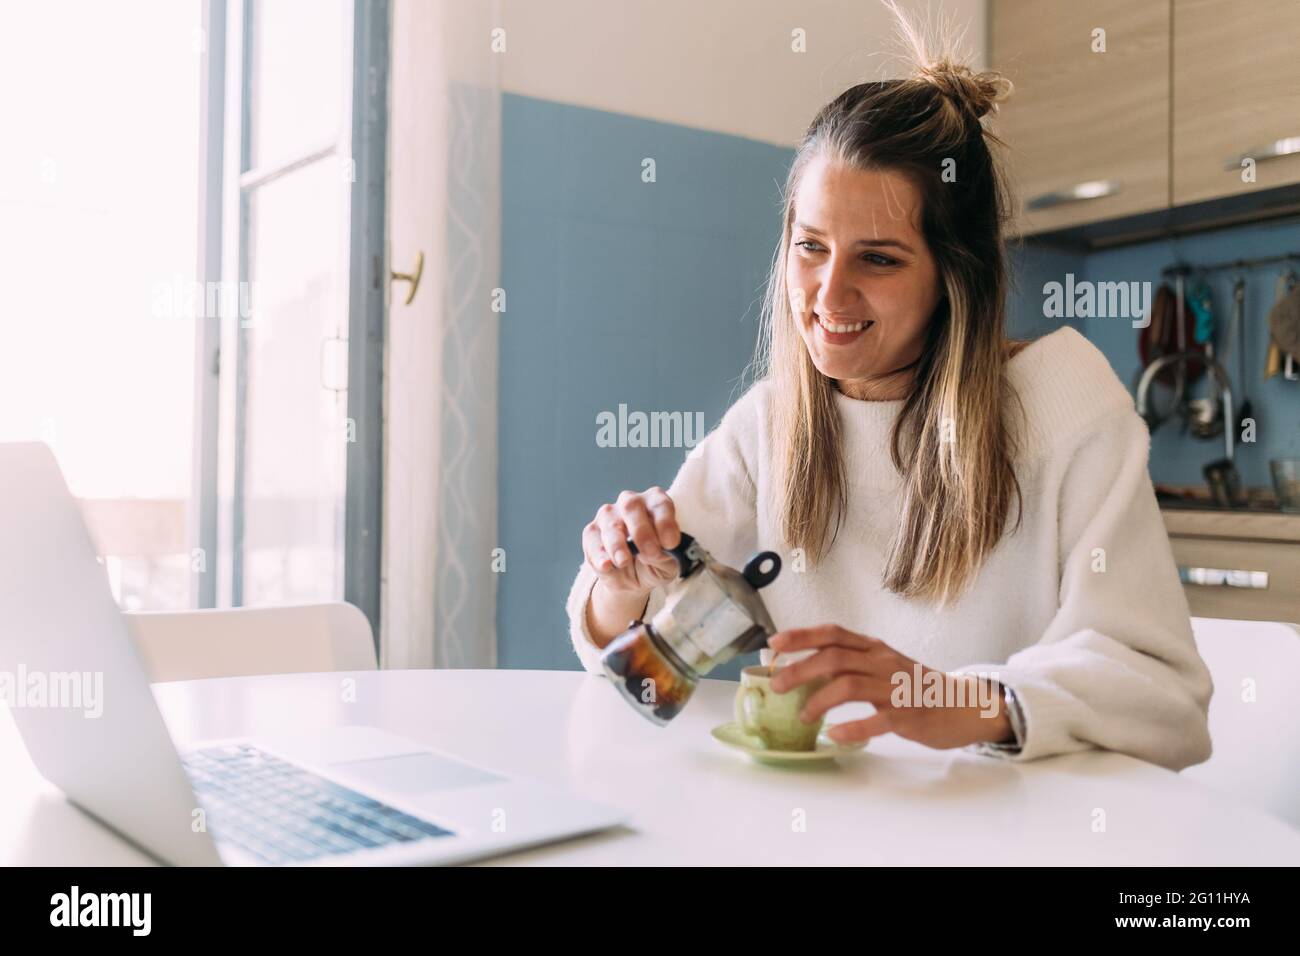 Italia, giovane donna che beve caffè e guarda il computer portatile Foto Stock